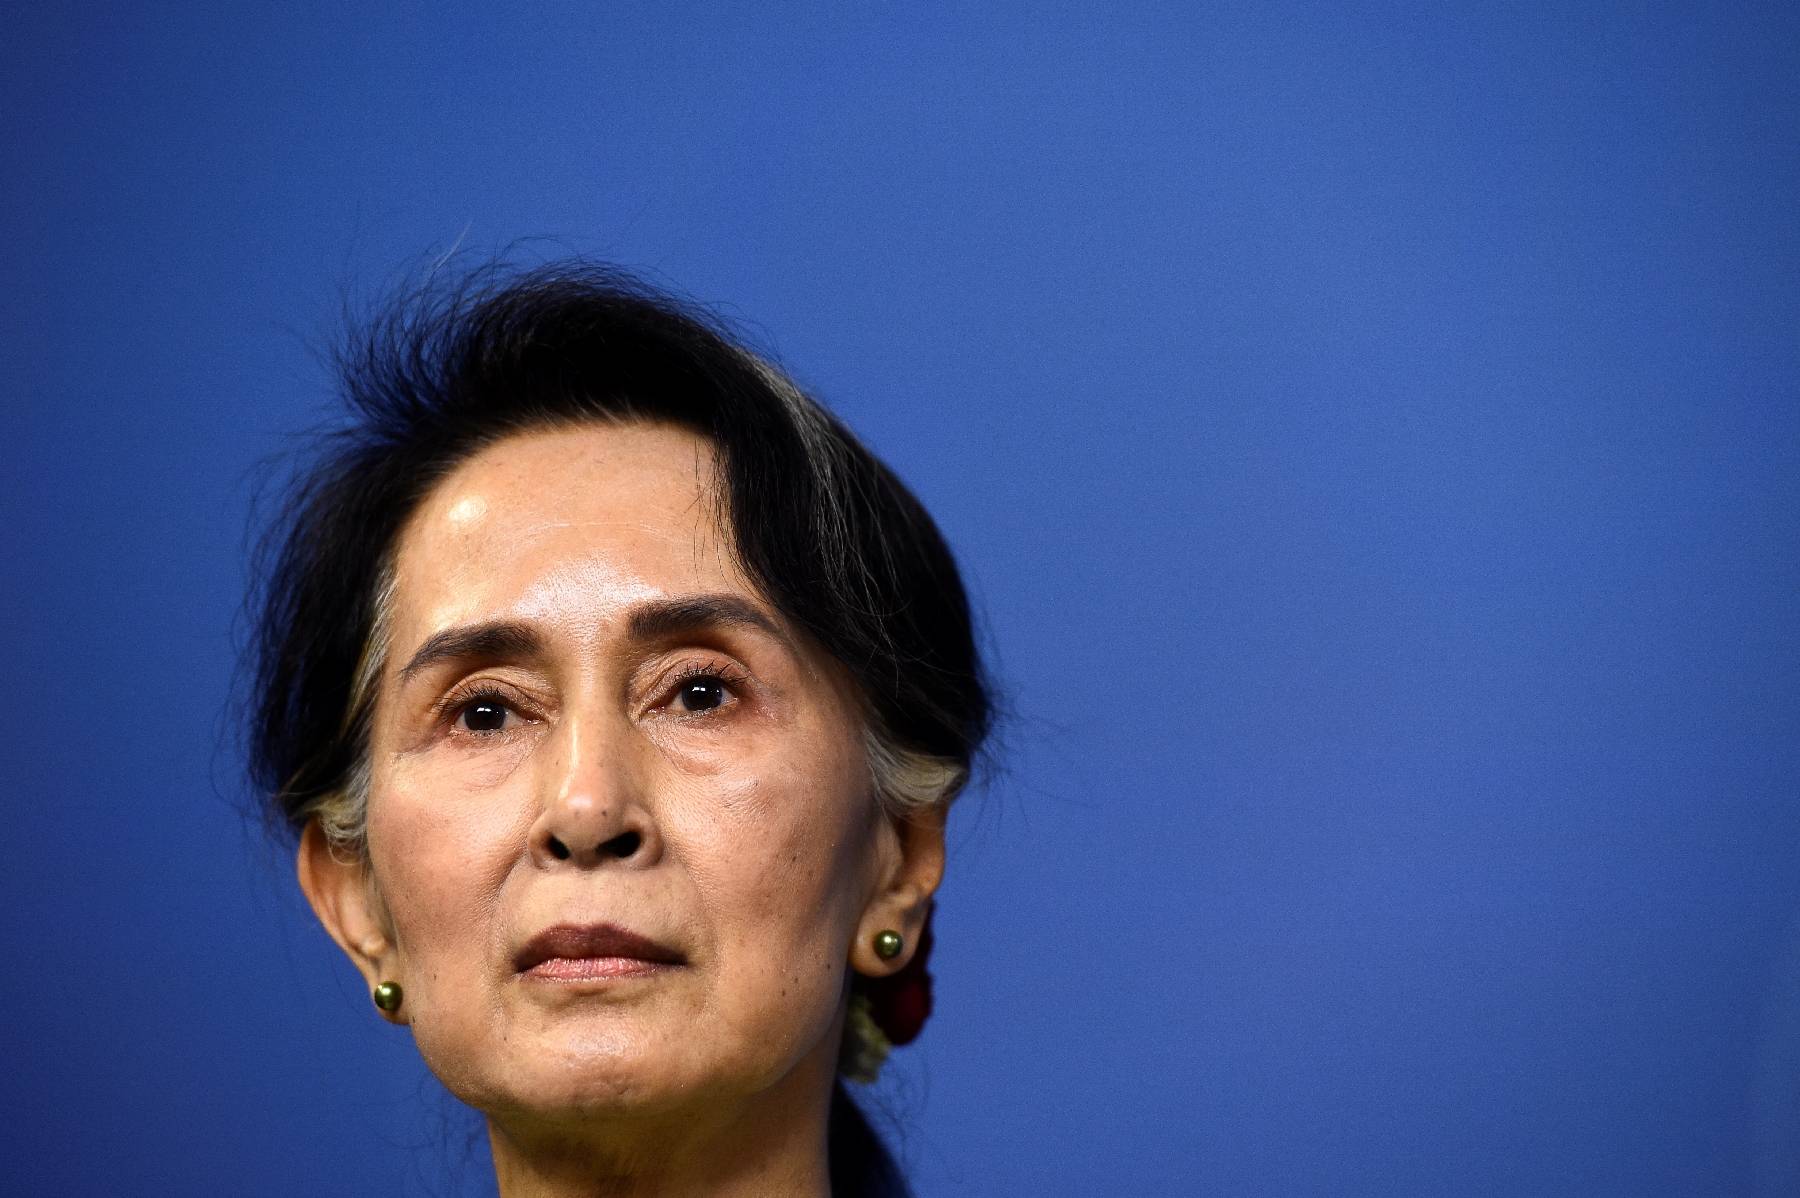 Birmanie: le procès-fleuve d'Aung San Suu Kyi arrive à son terme